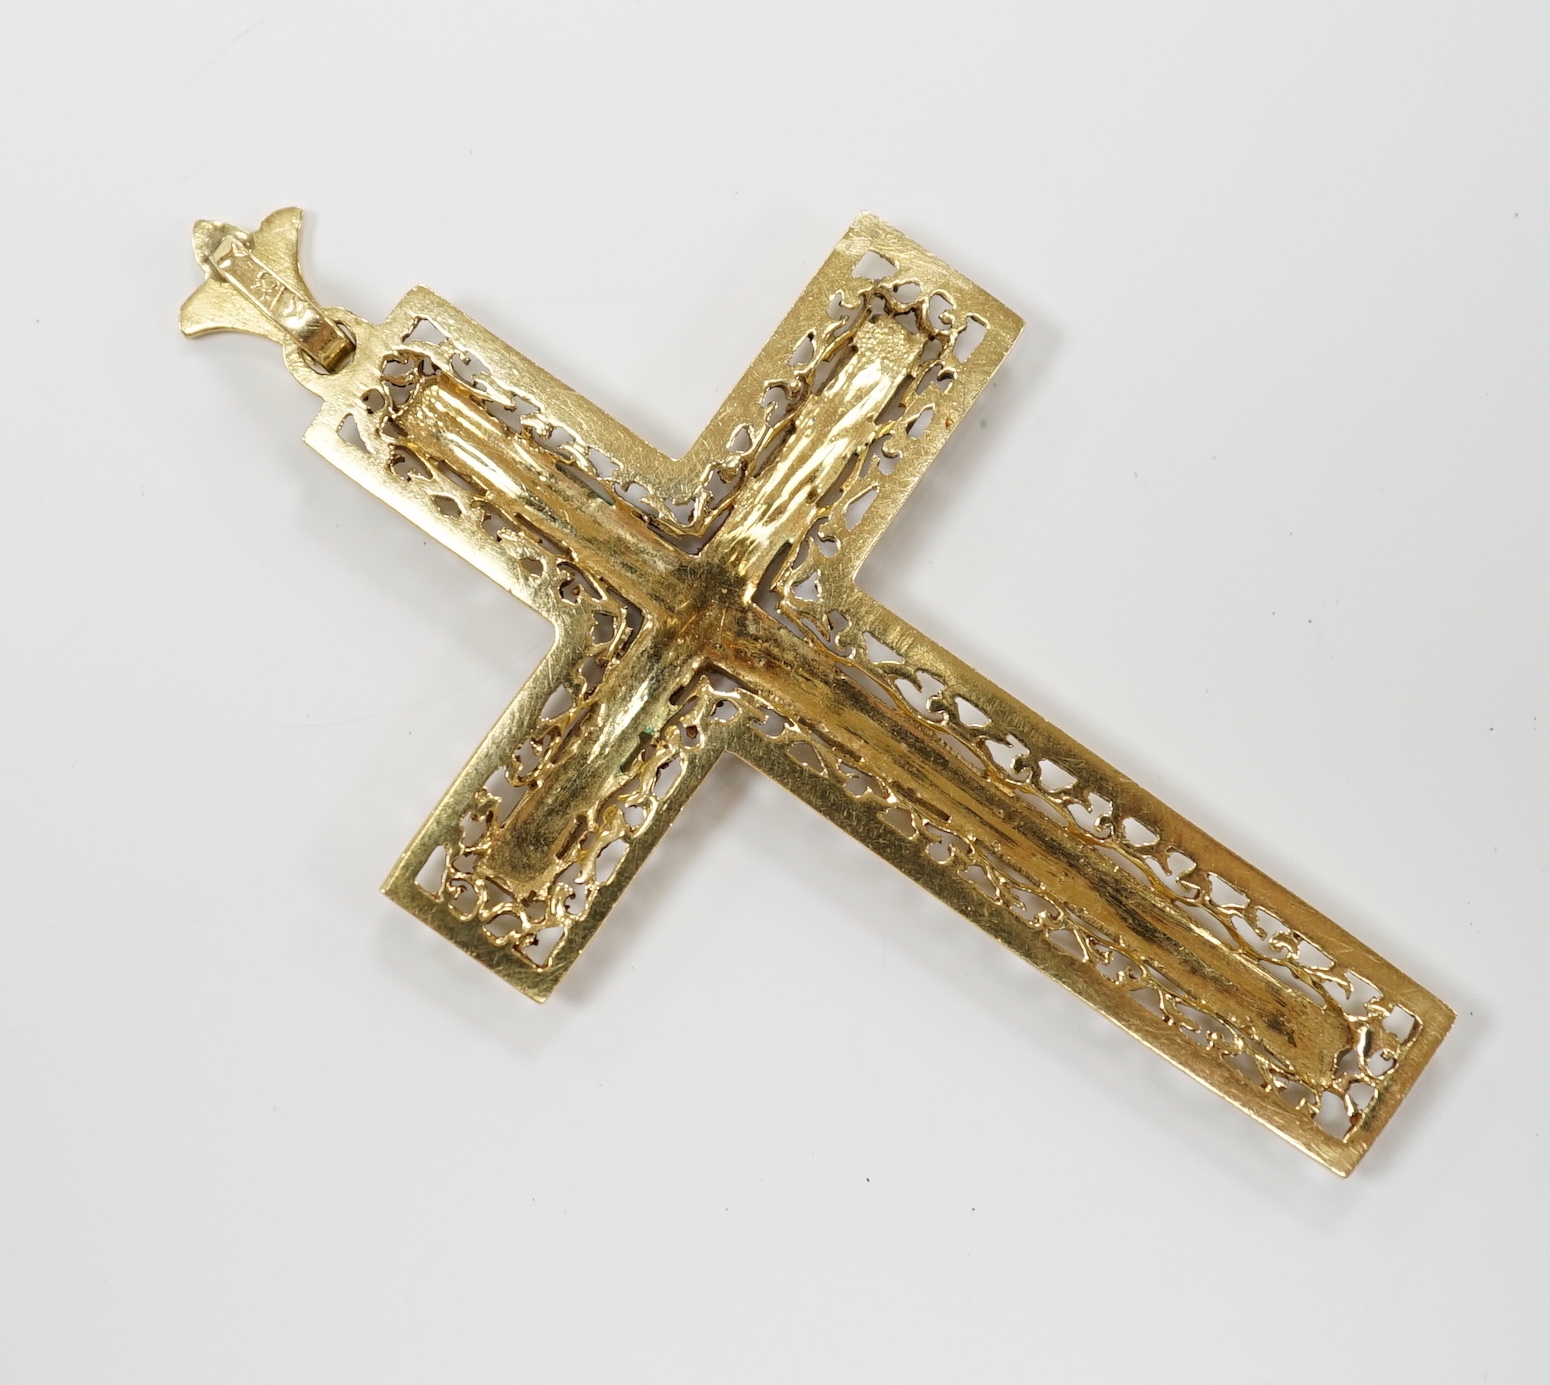 An 18k yellow metal and blue enamel set cross pendant, 6cm, gross weight 11.1 grams.